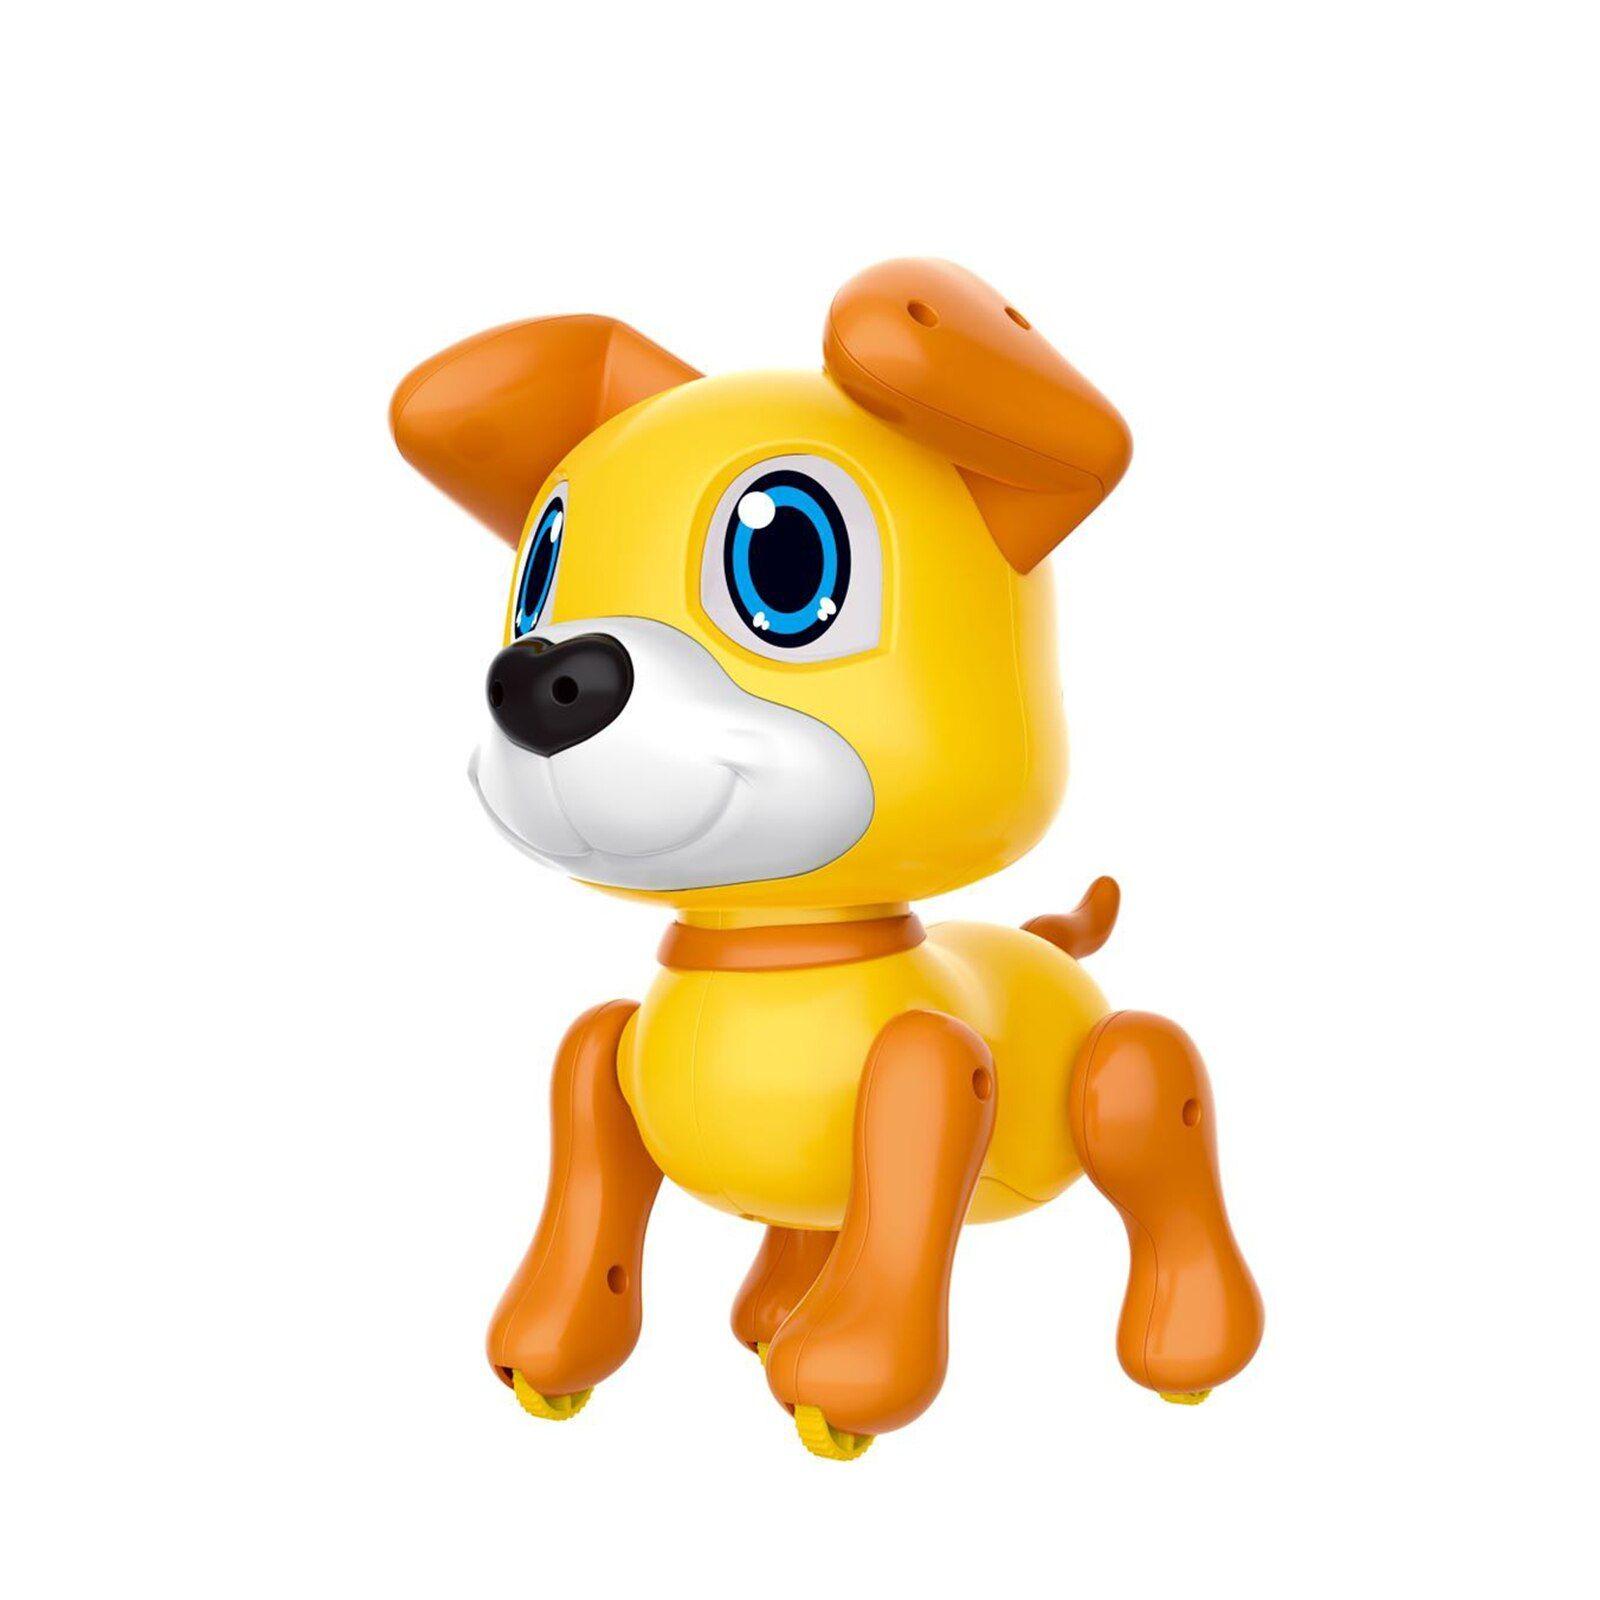 Costway chien robot télécommandé, jouet interactif pour enfants